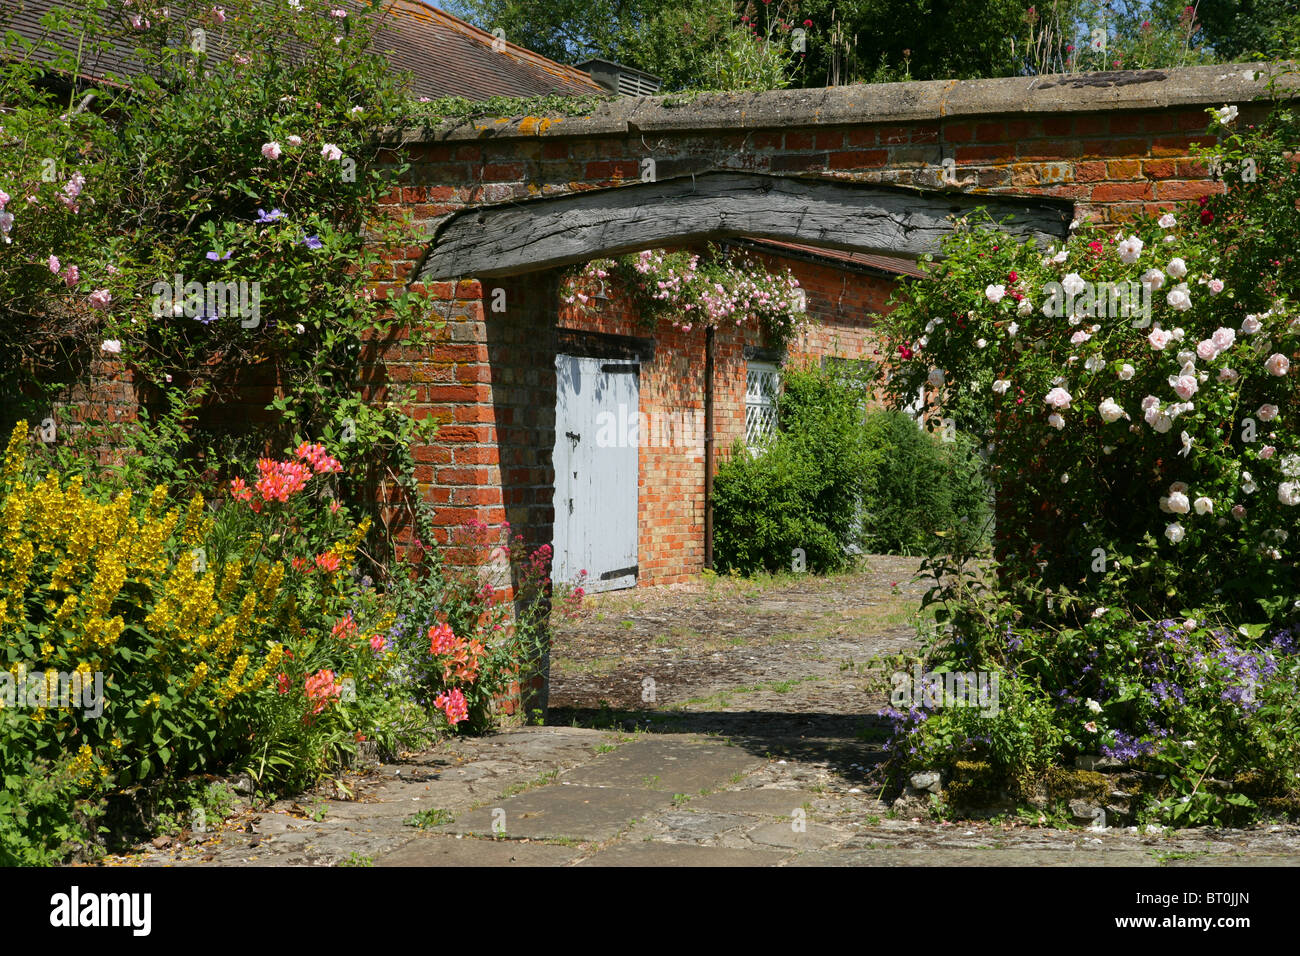 La vecchia casa colonica in mattoni e arco in legno che conduce al cortile stabile con estate rose e nei cestini appesi, Inghilterra. Foto Stock